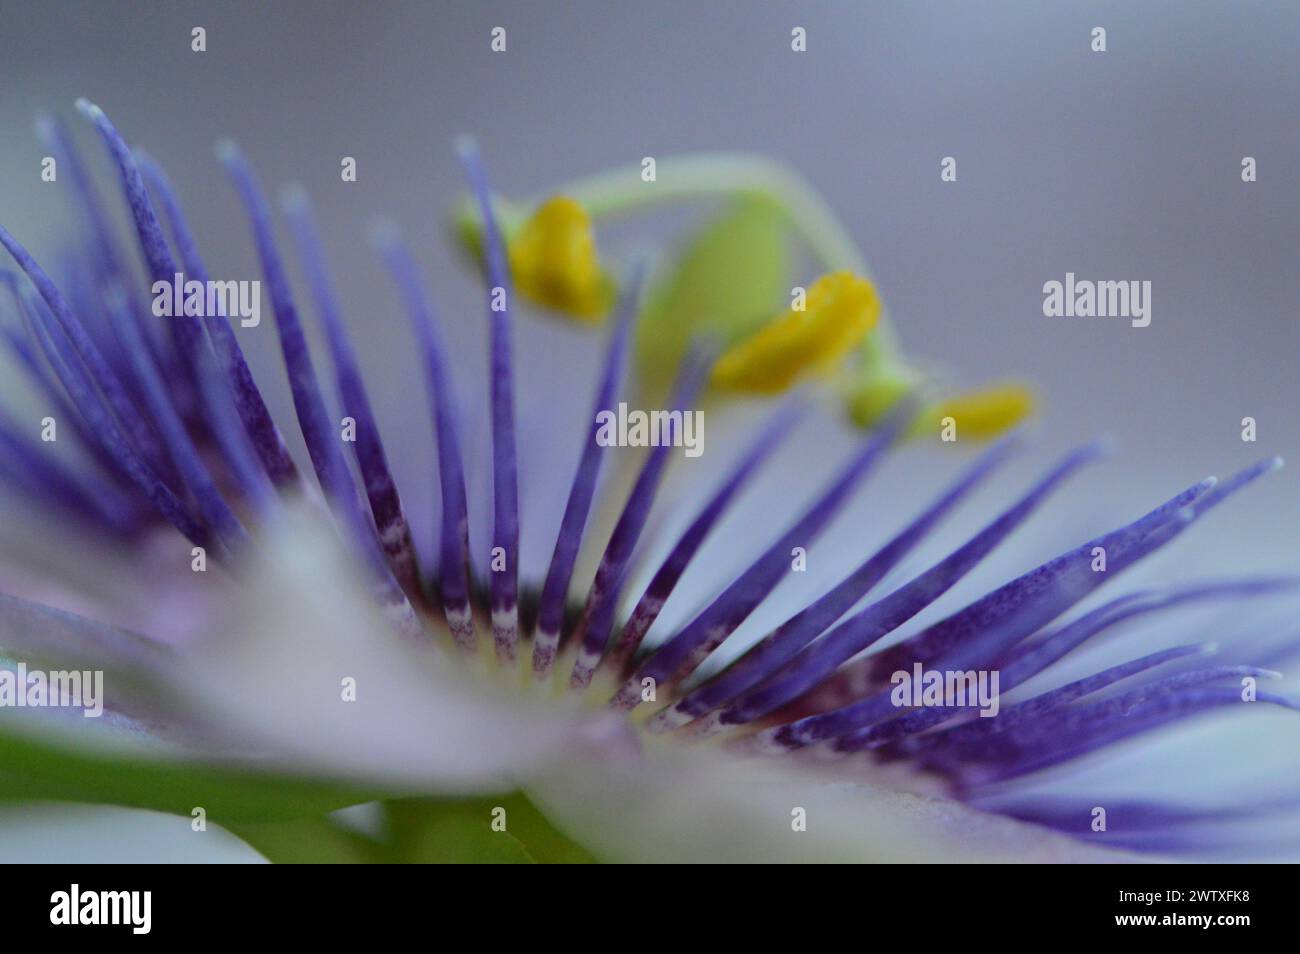 Fotografia macro de una flor de la pasión Stock Photo